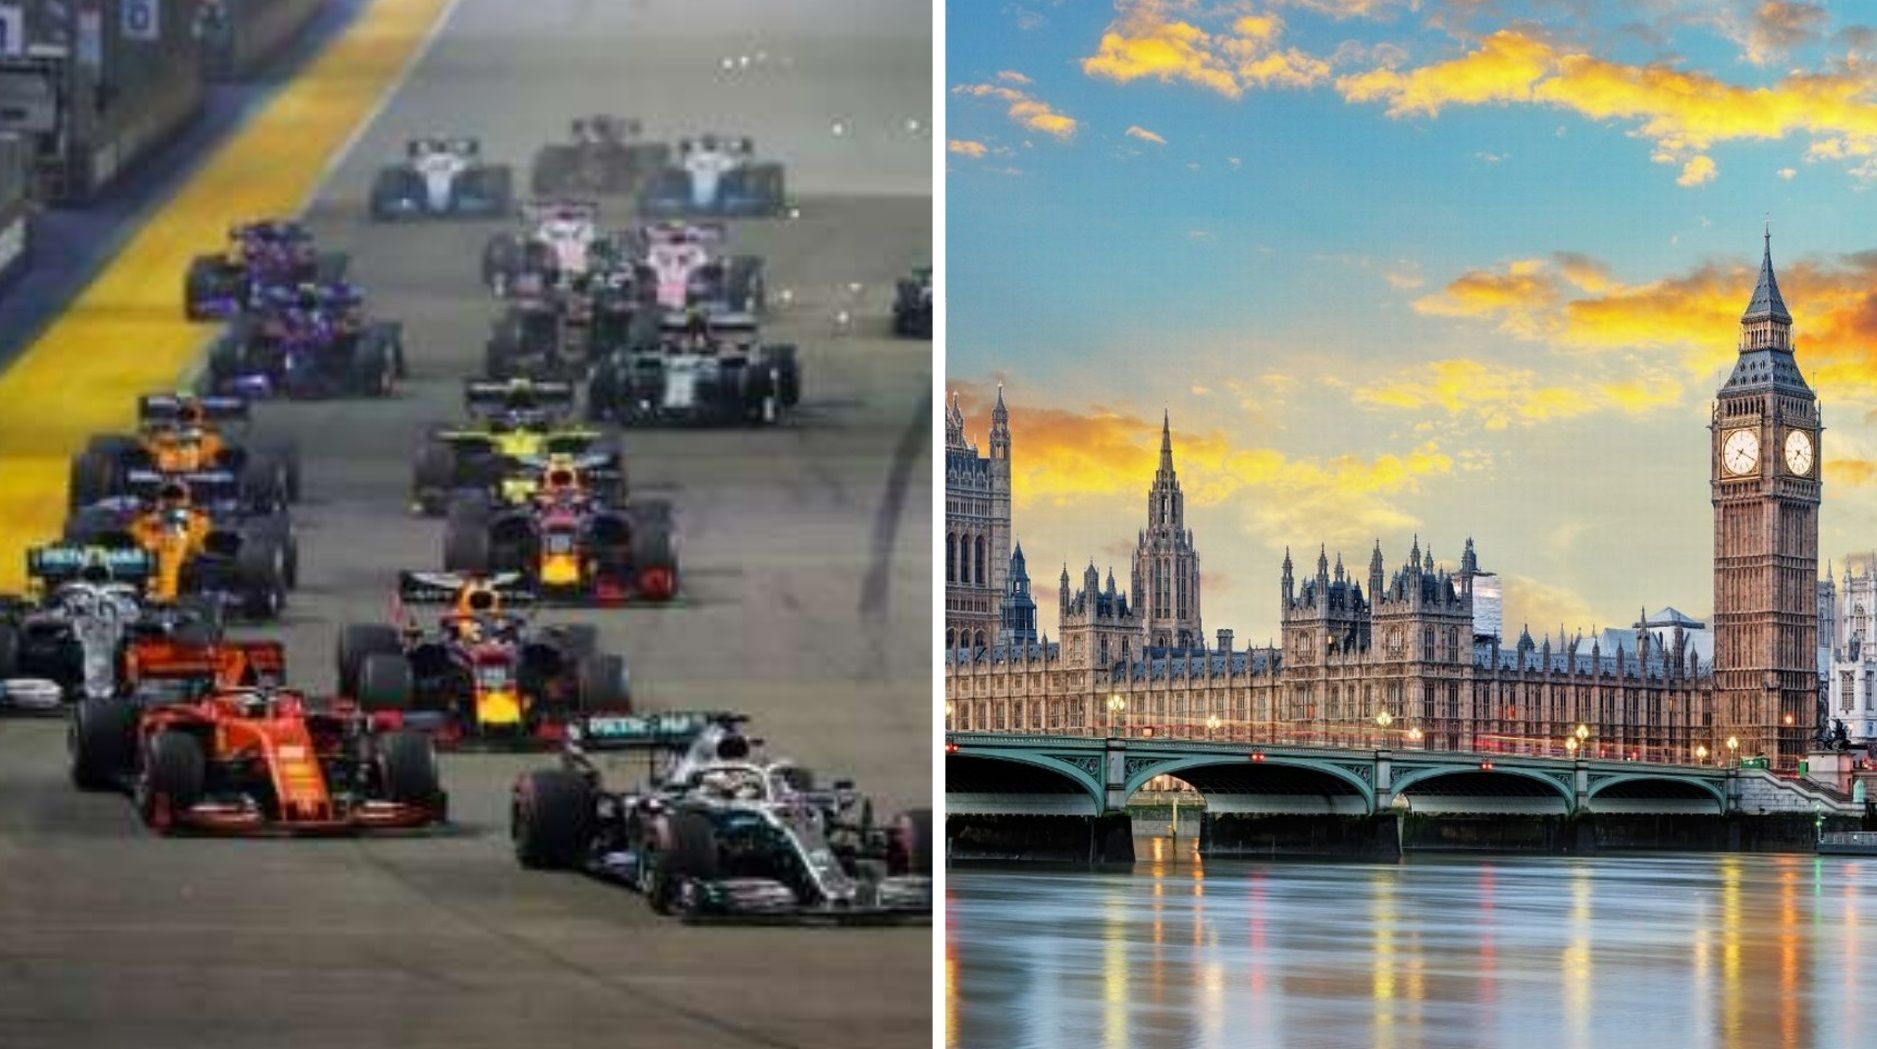 Формула-1 может прийти в Лондон